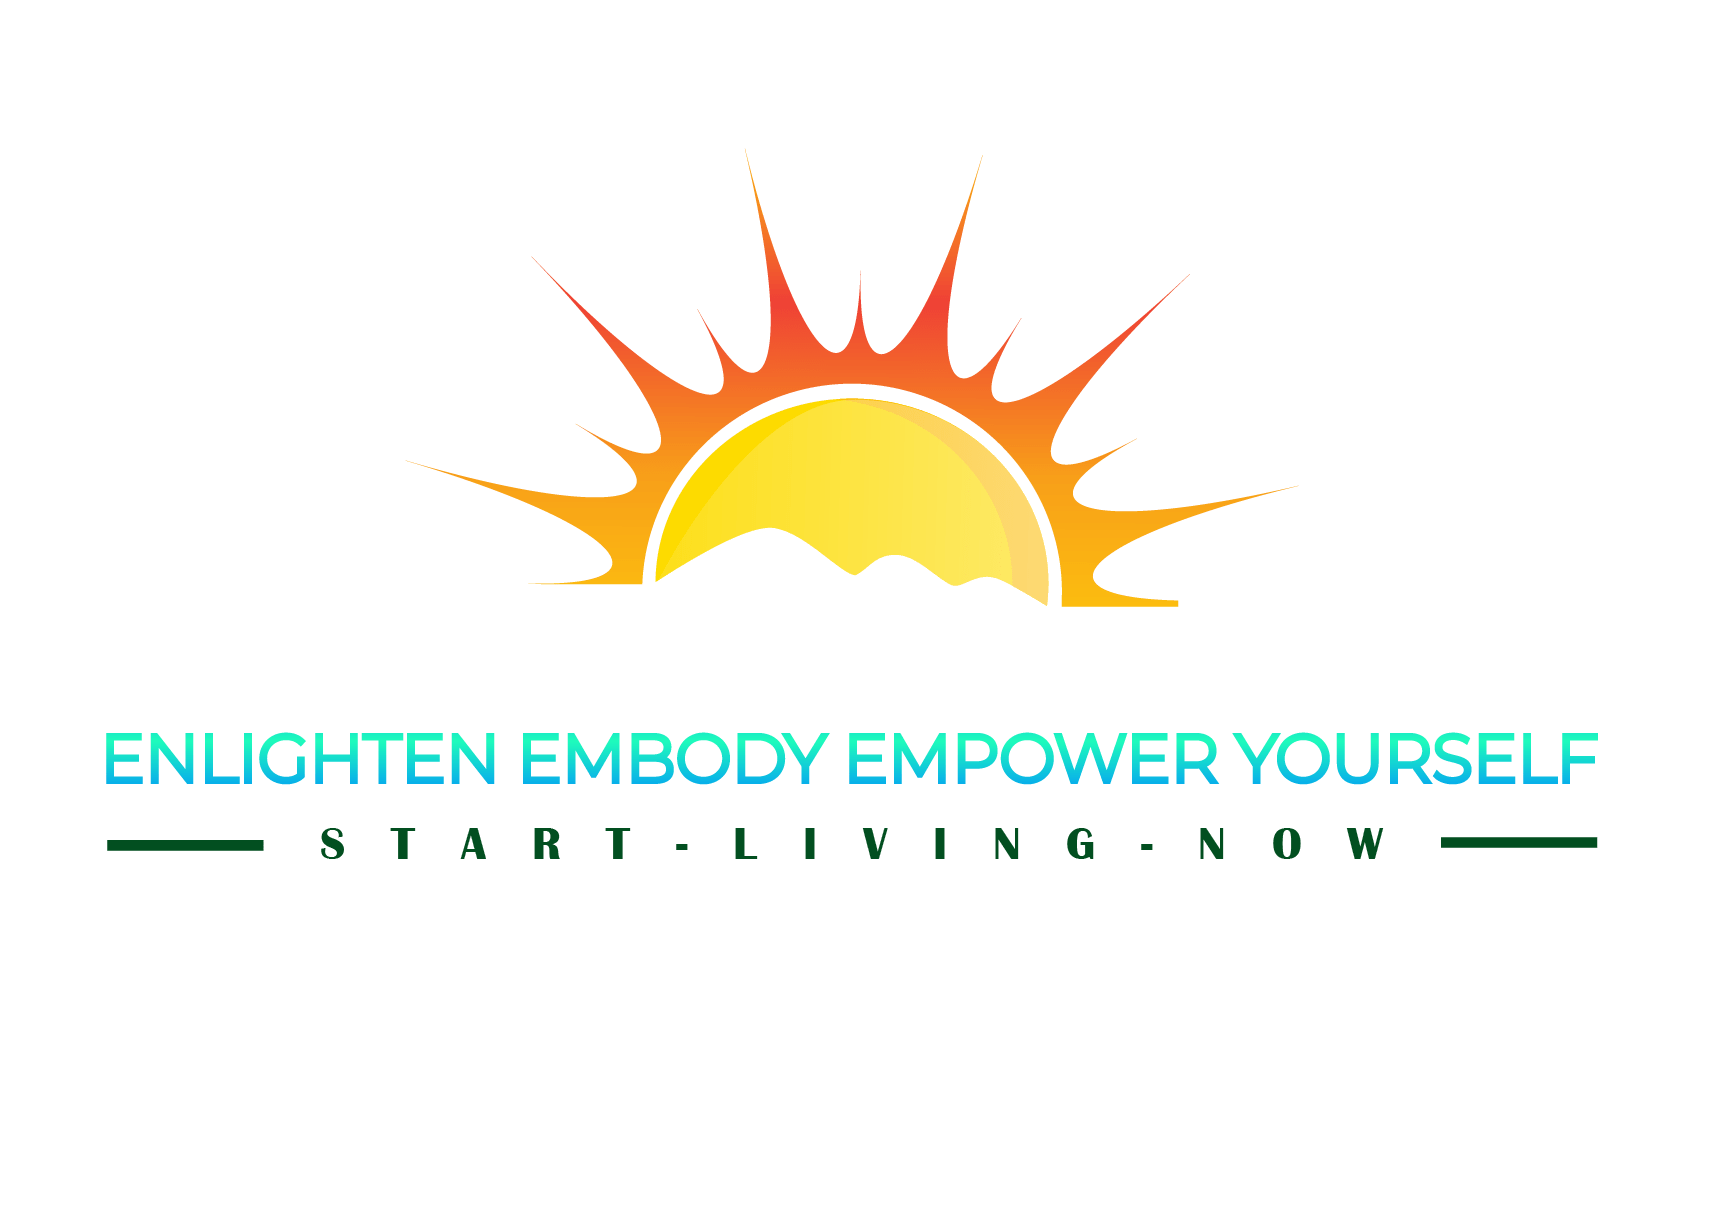  Enlighten Embody Empower Yourself